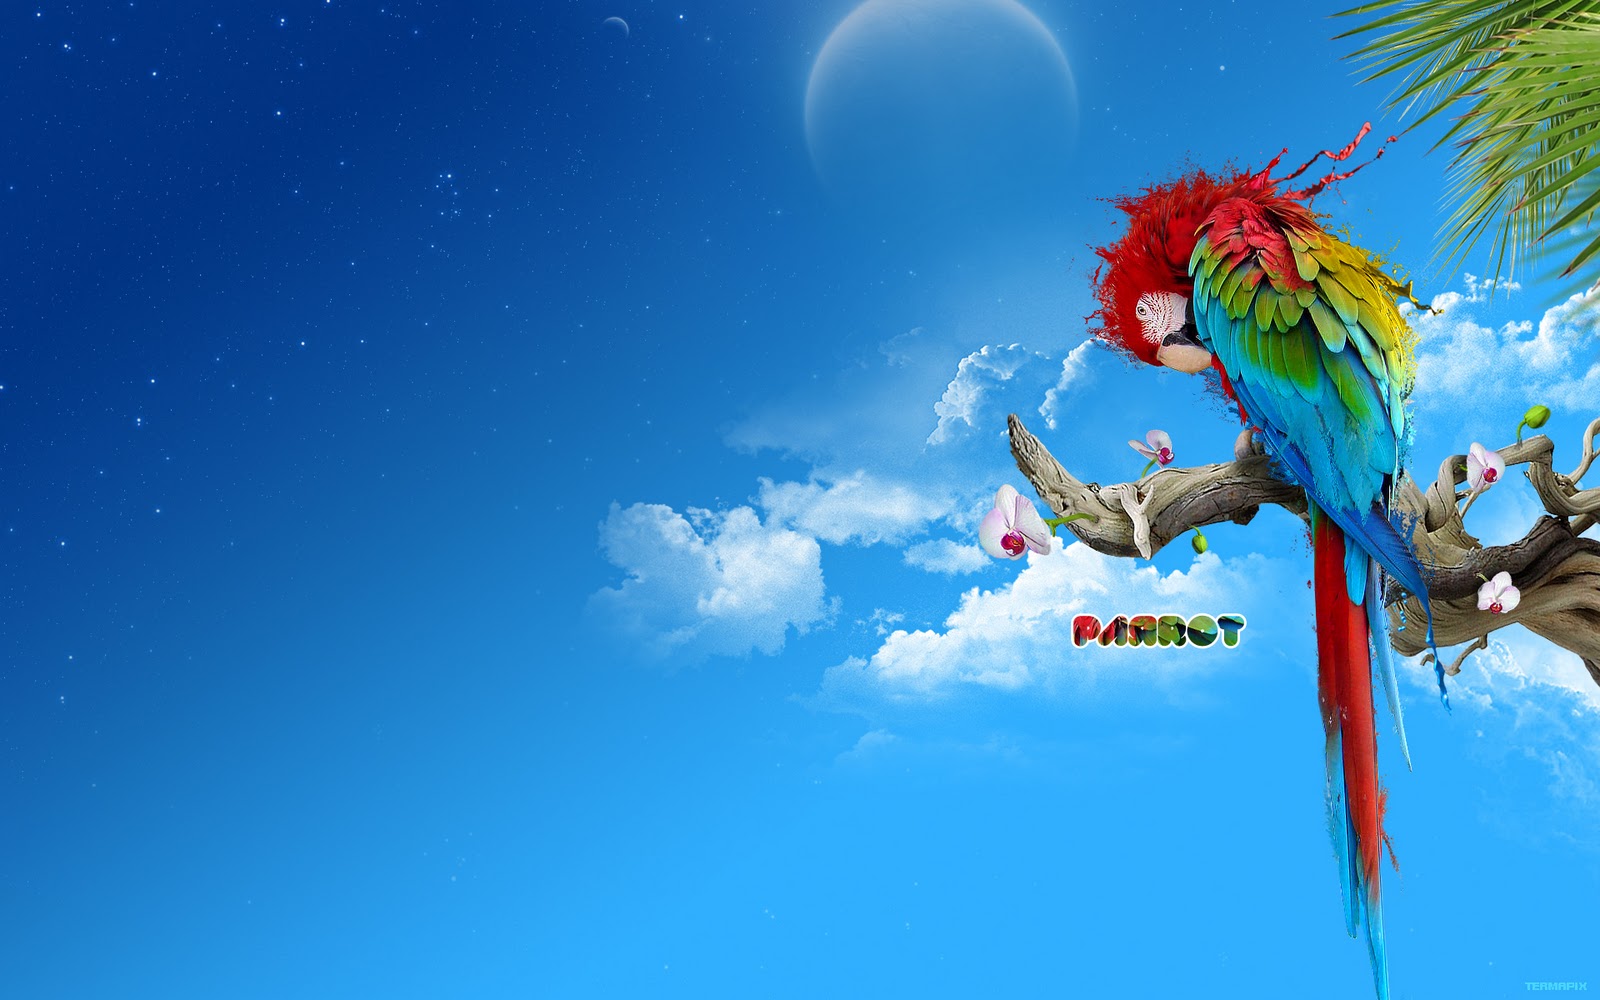 http://3.bp.blogspot.com/-vtzys3_k6_I/ToauziO8lBI/AAAAAAAAAjs/0eXN43cfC_E/s1600/parrot-wallpaper.jpg